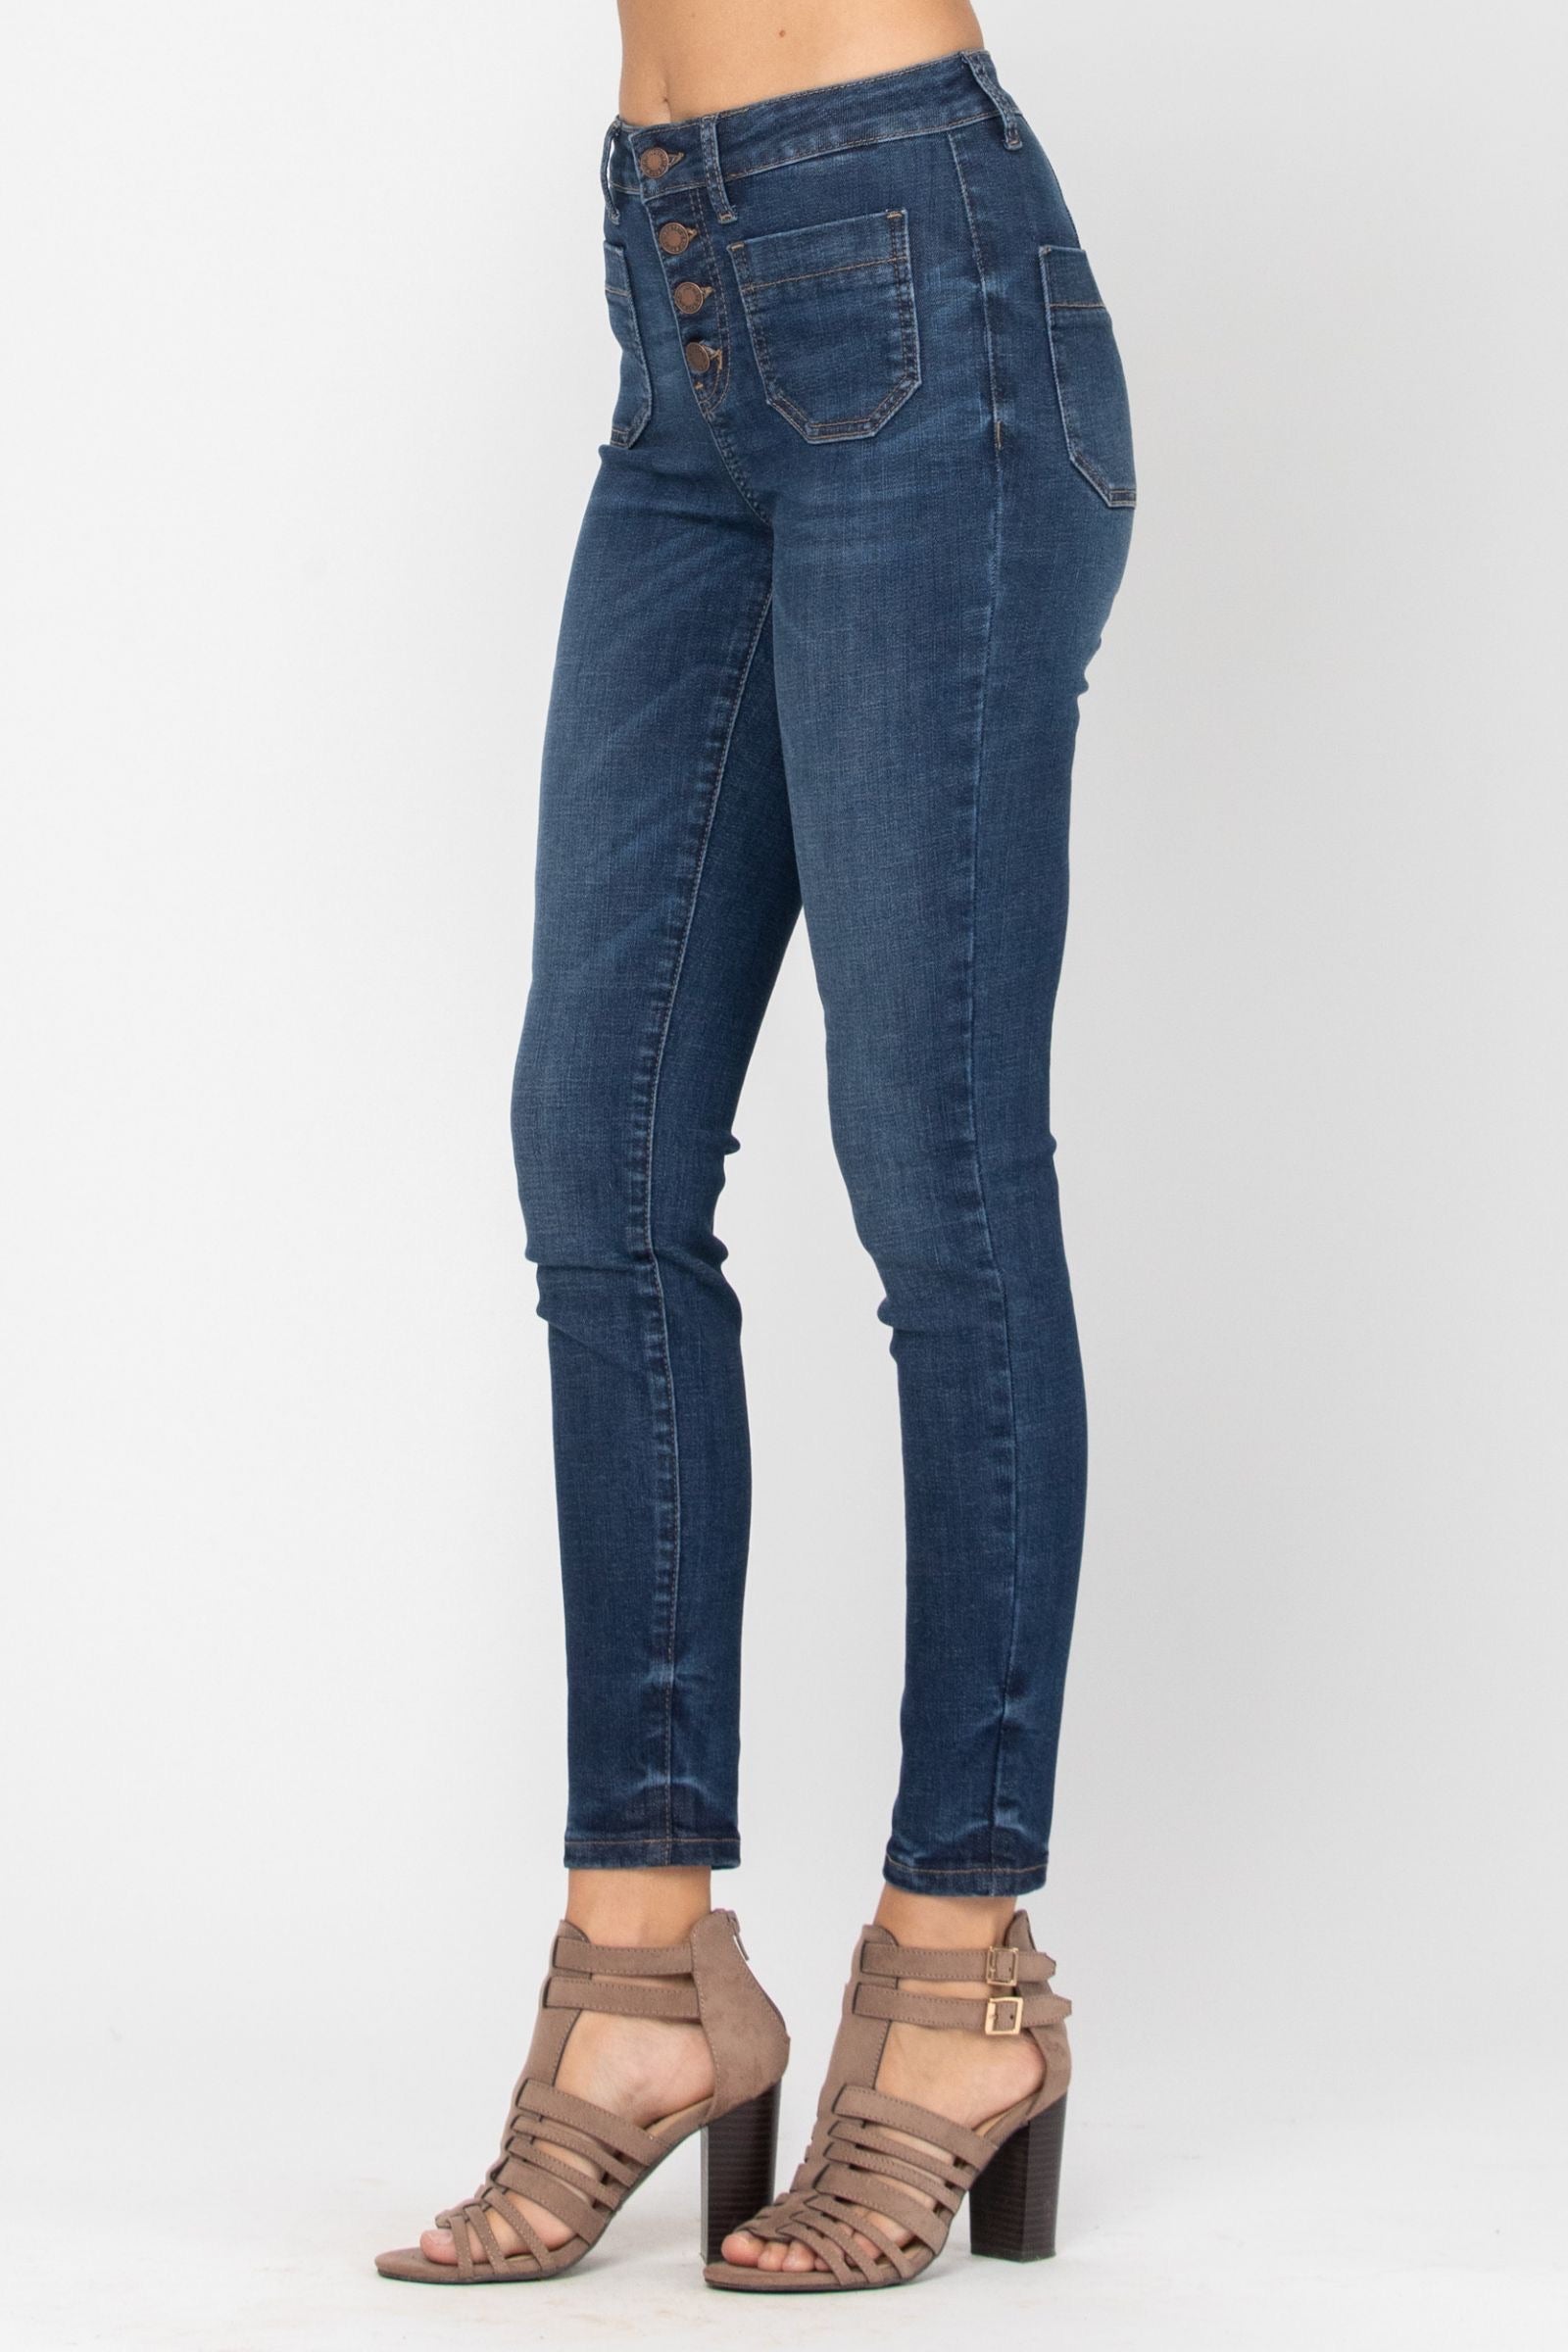 Judy Blue Patch Pocket Skinny Jeans